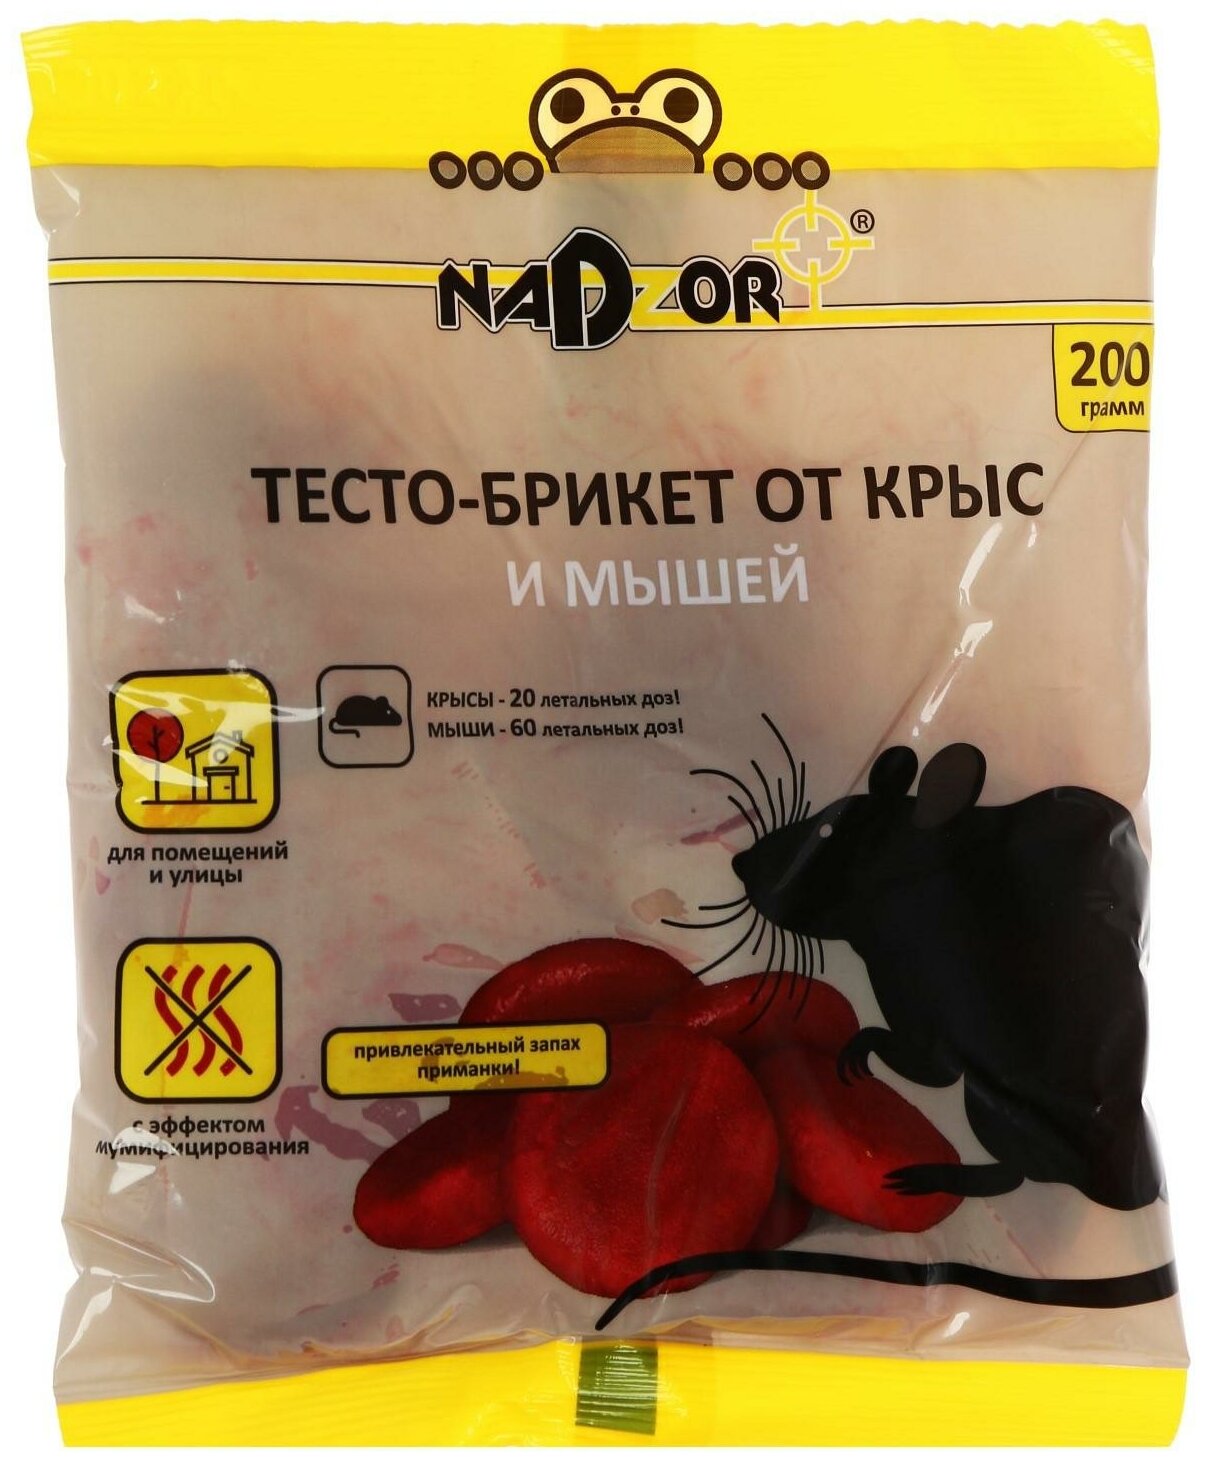 Тесто-брикет от крыс и мышей Nadzor 200г